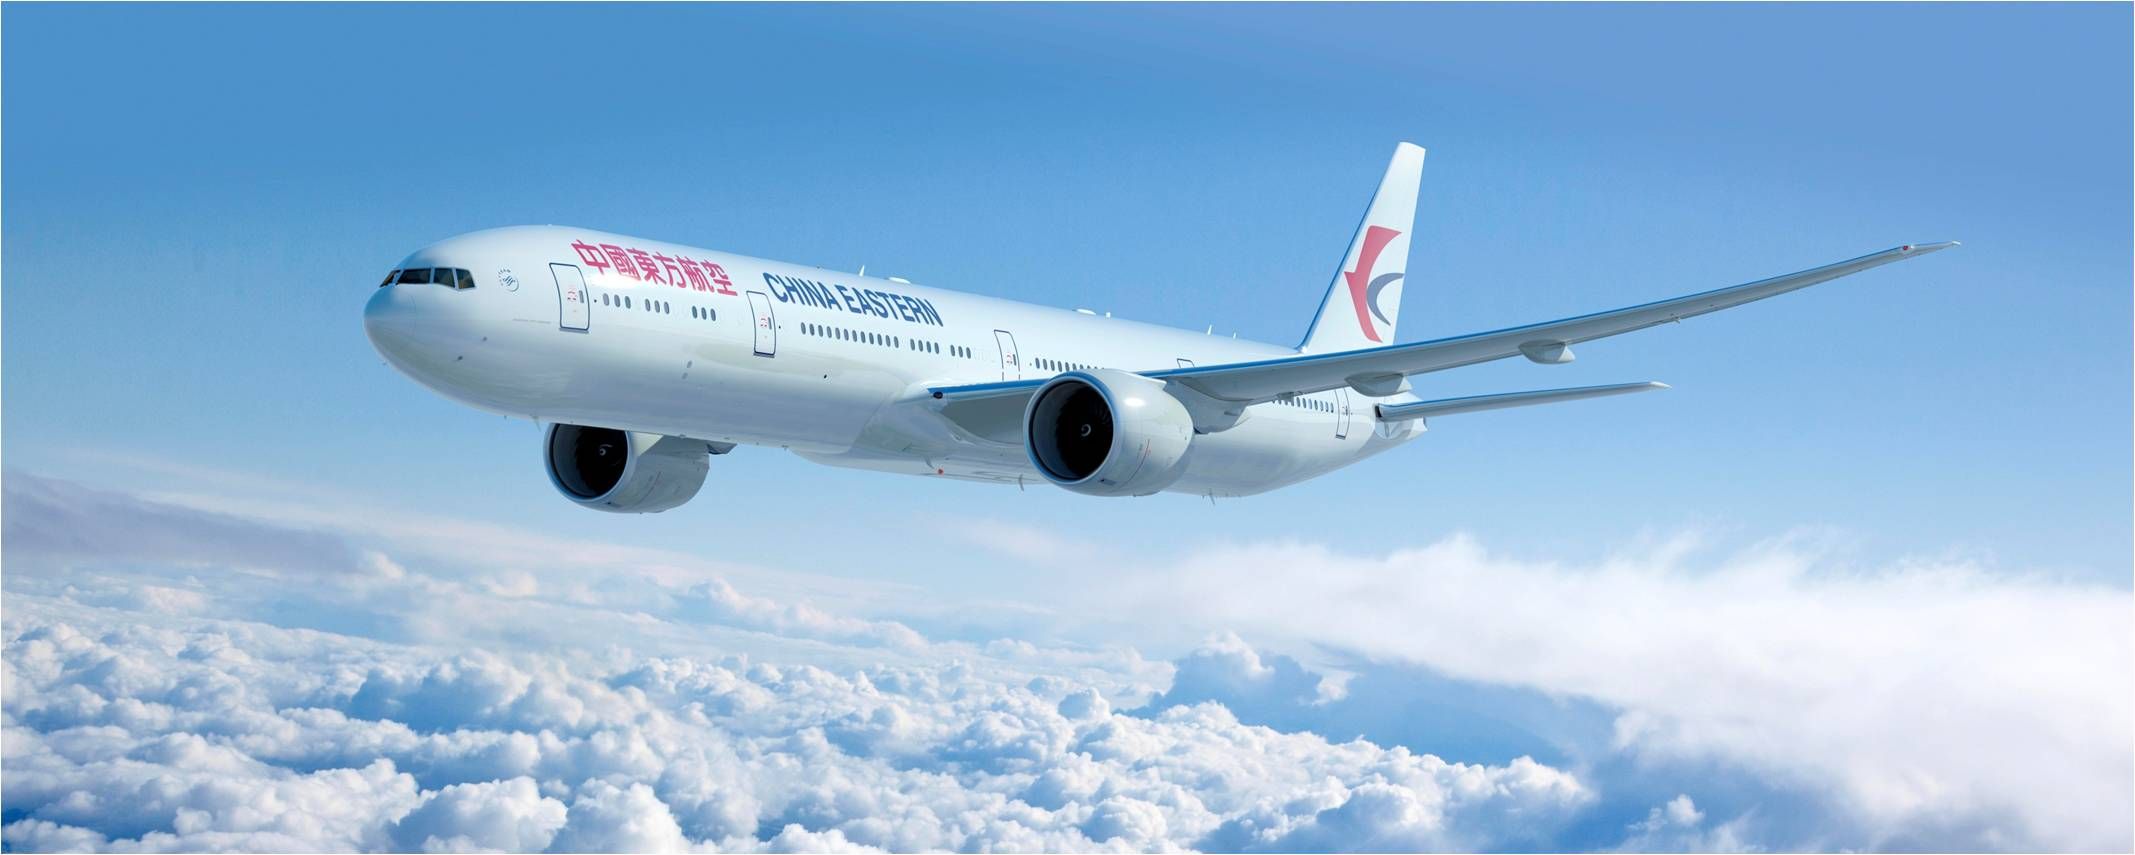 A másik kínai óriás társaság inkább a kéthajtóműves Boeing-szélestörzsű mellett döntött